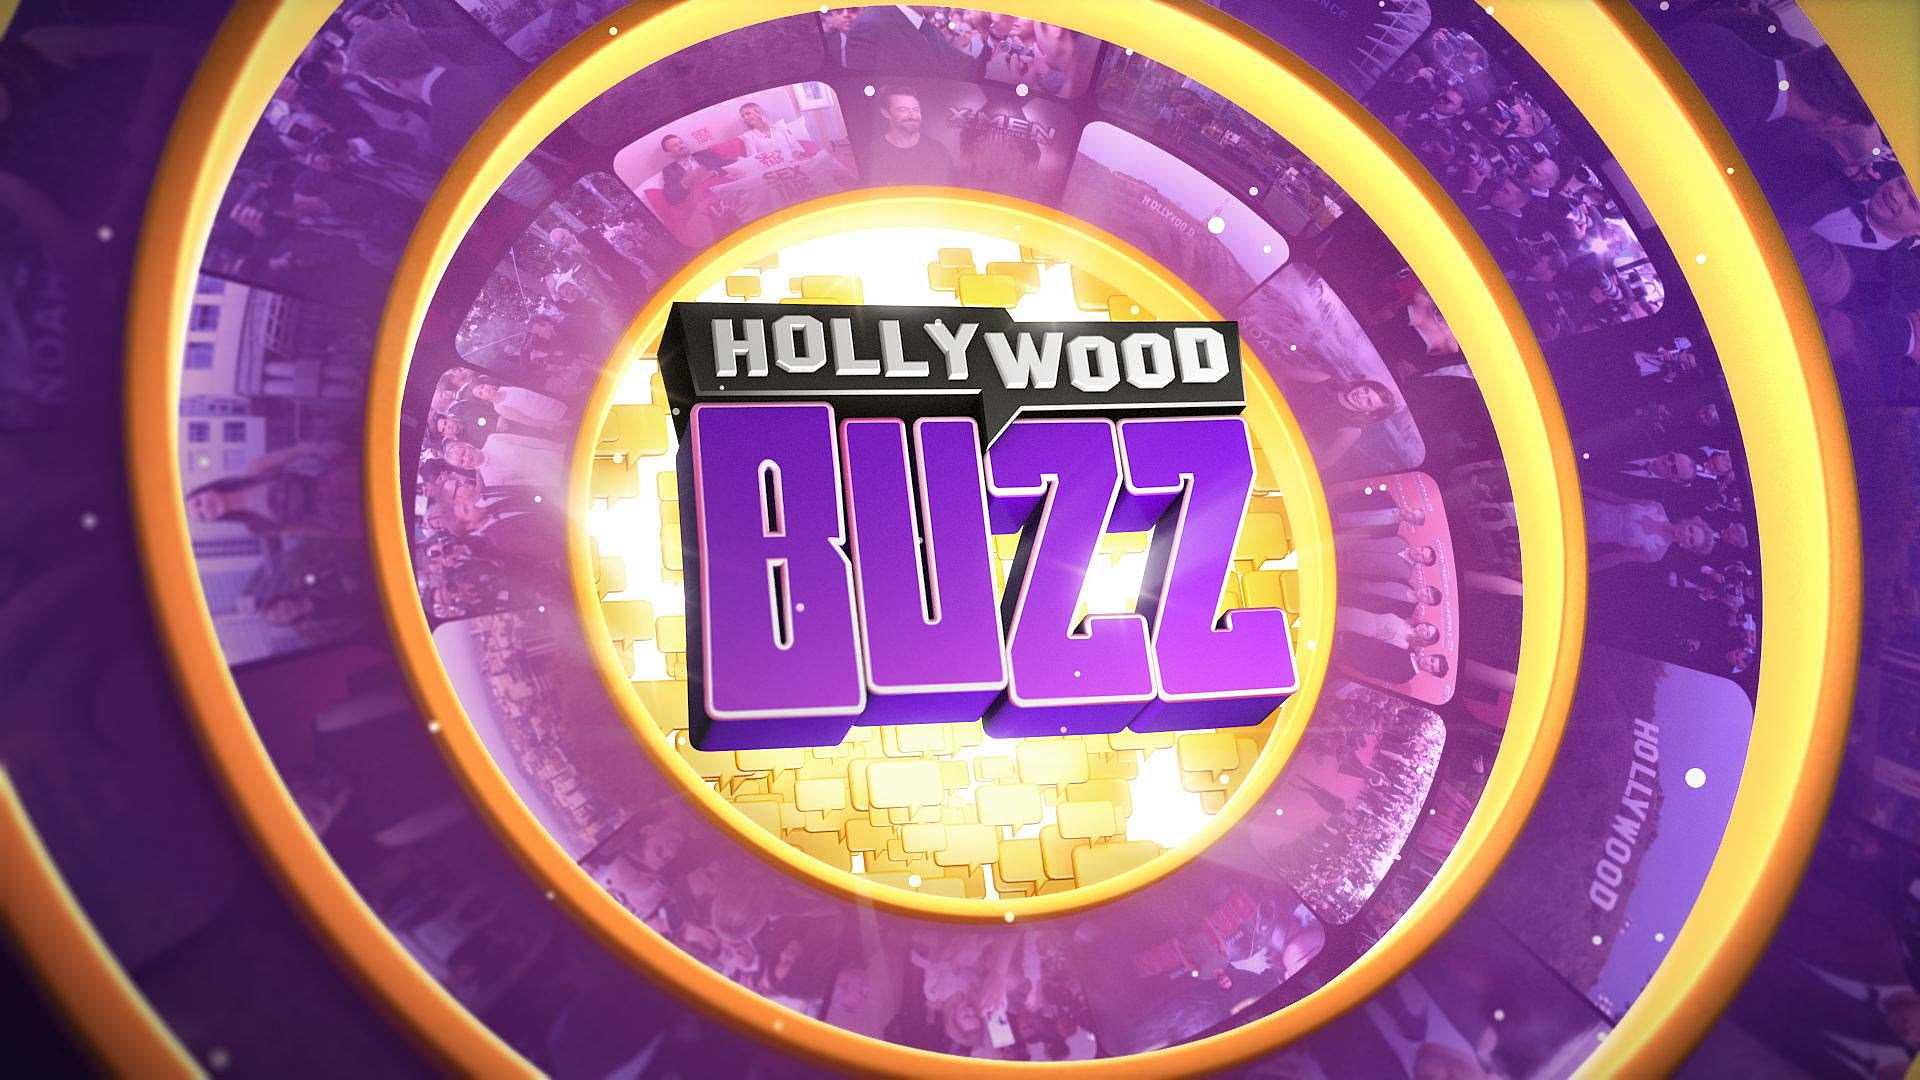 Hollywood Buzz